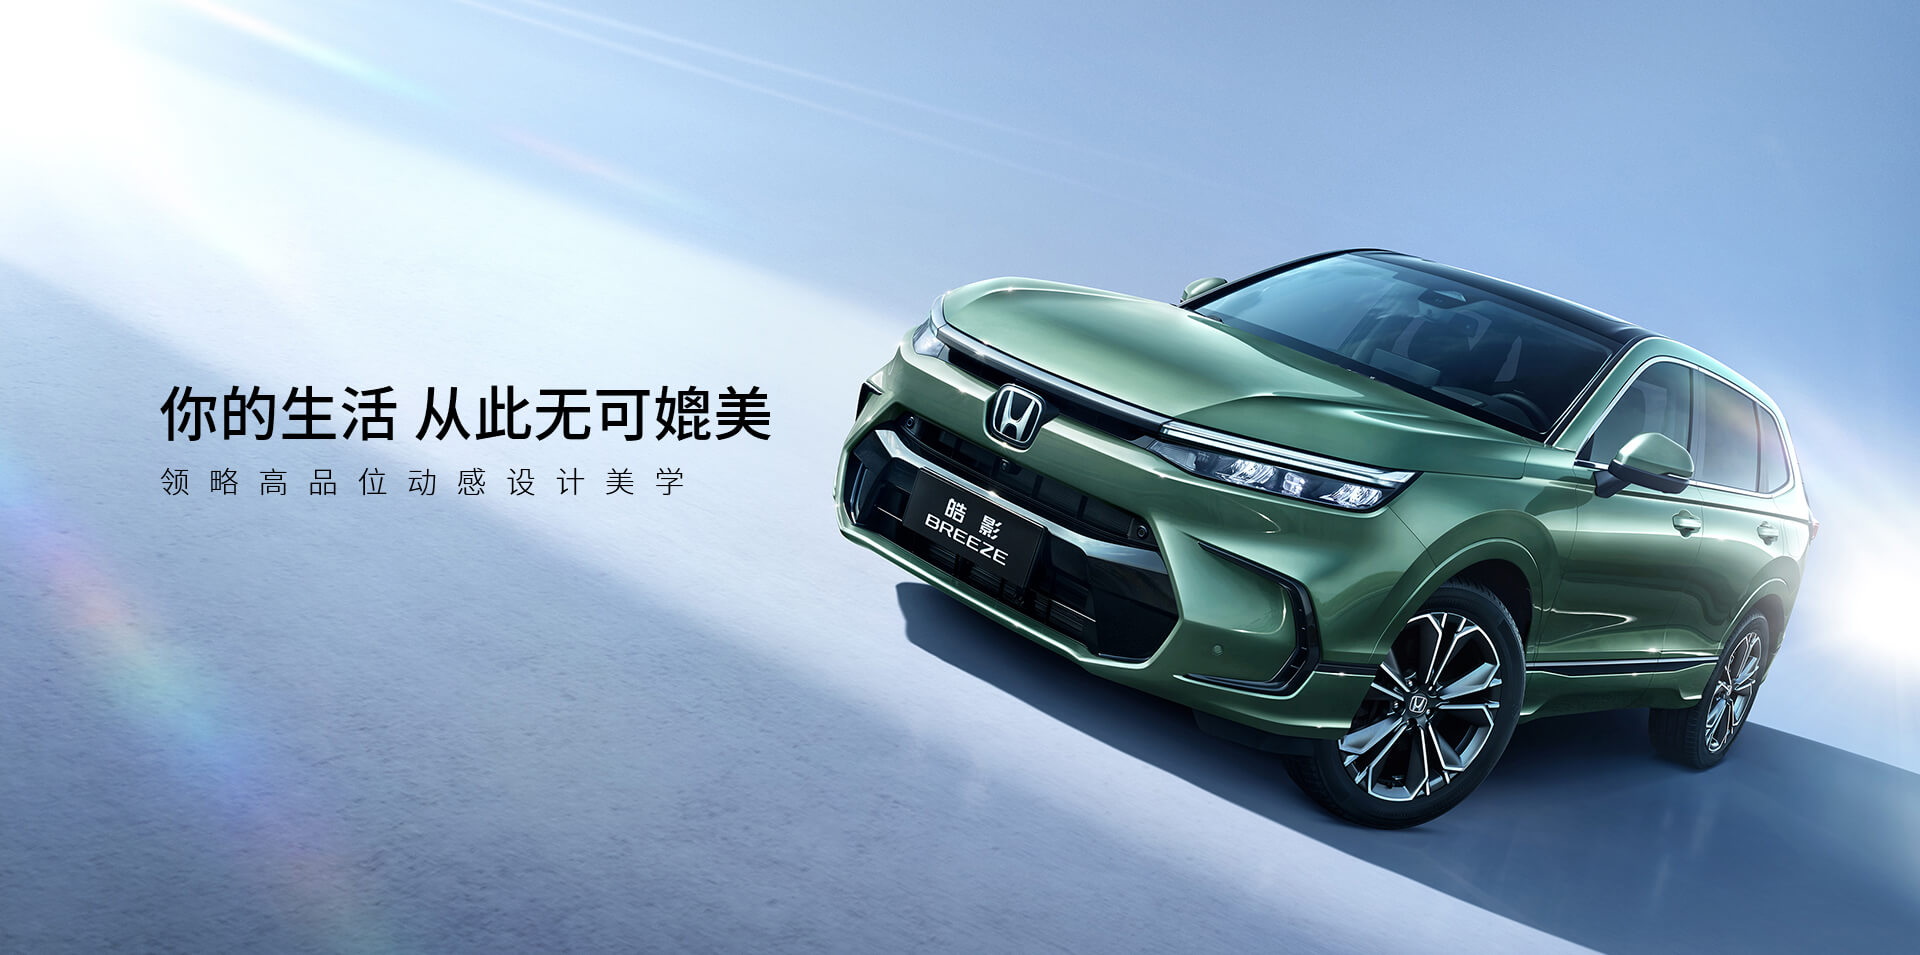 Honda Breeze - CR-V Trung Quốc được nhá hàng thế hệ mới - Ảnh 5.